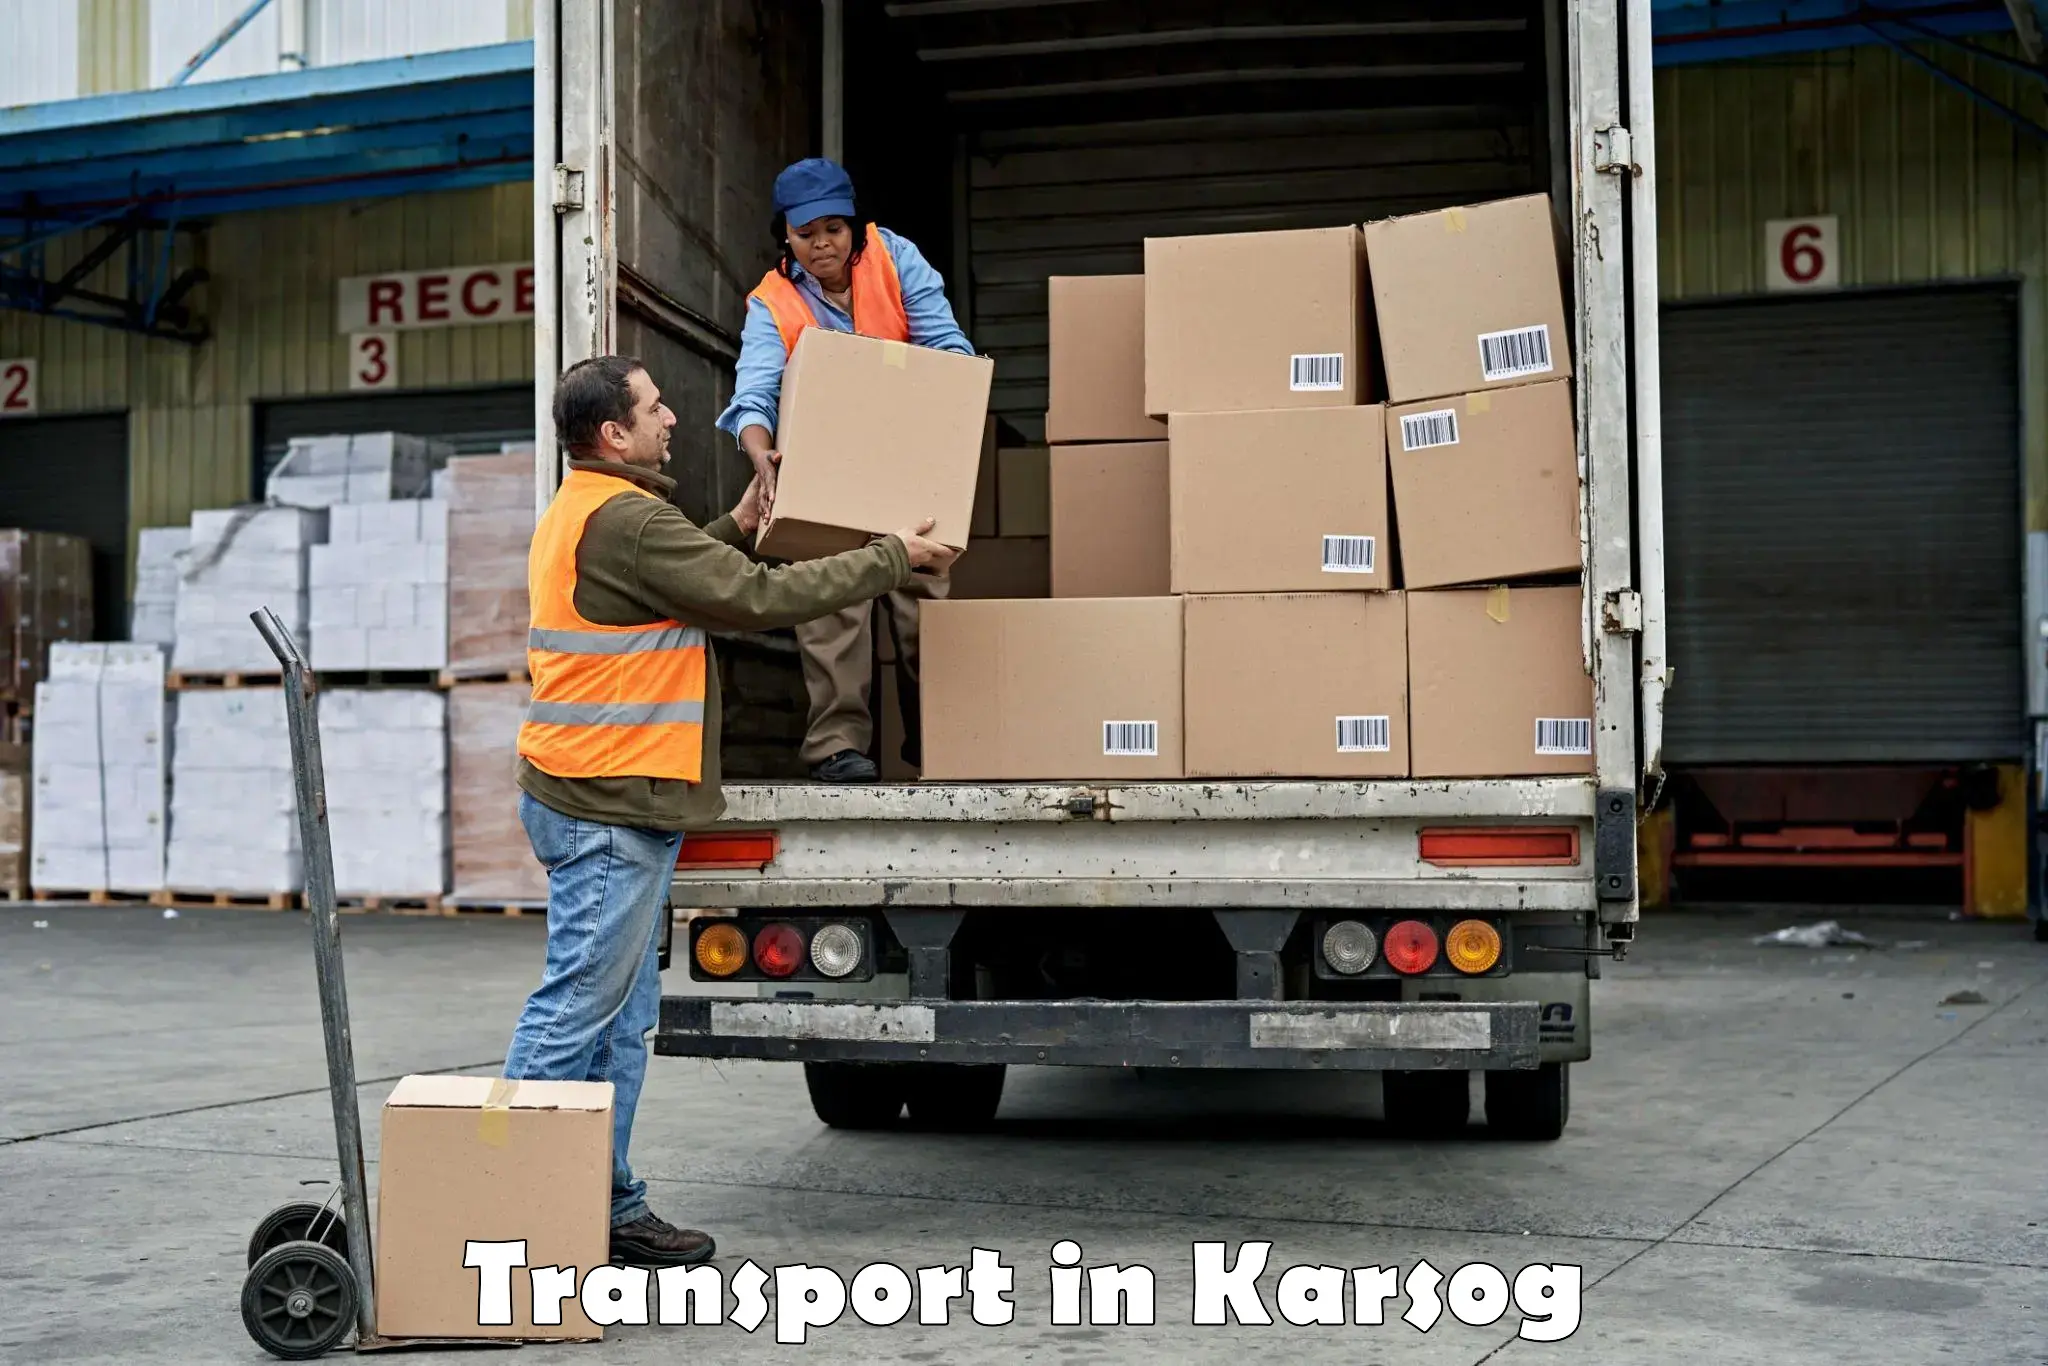 Land transport services in Karsog